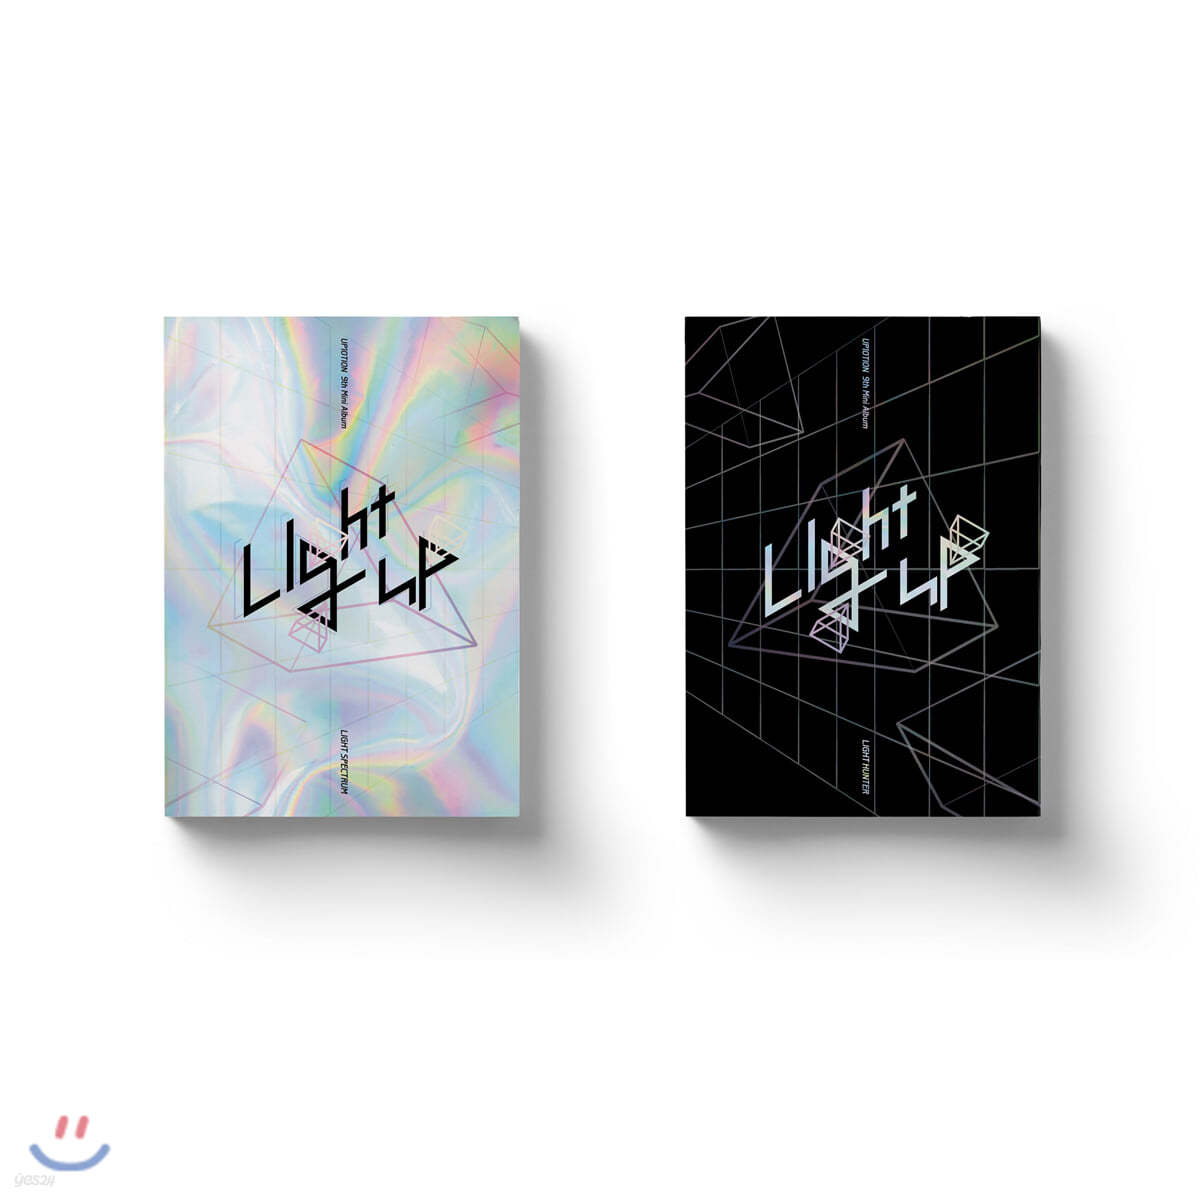 업텐션 (UP10TION) - 미니 9집 : Light UP [SET]